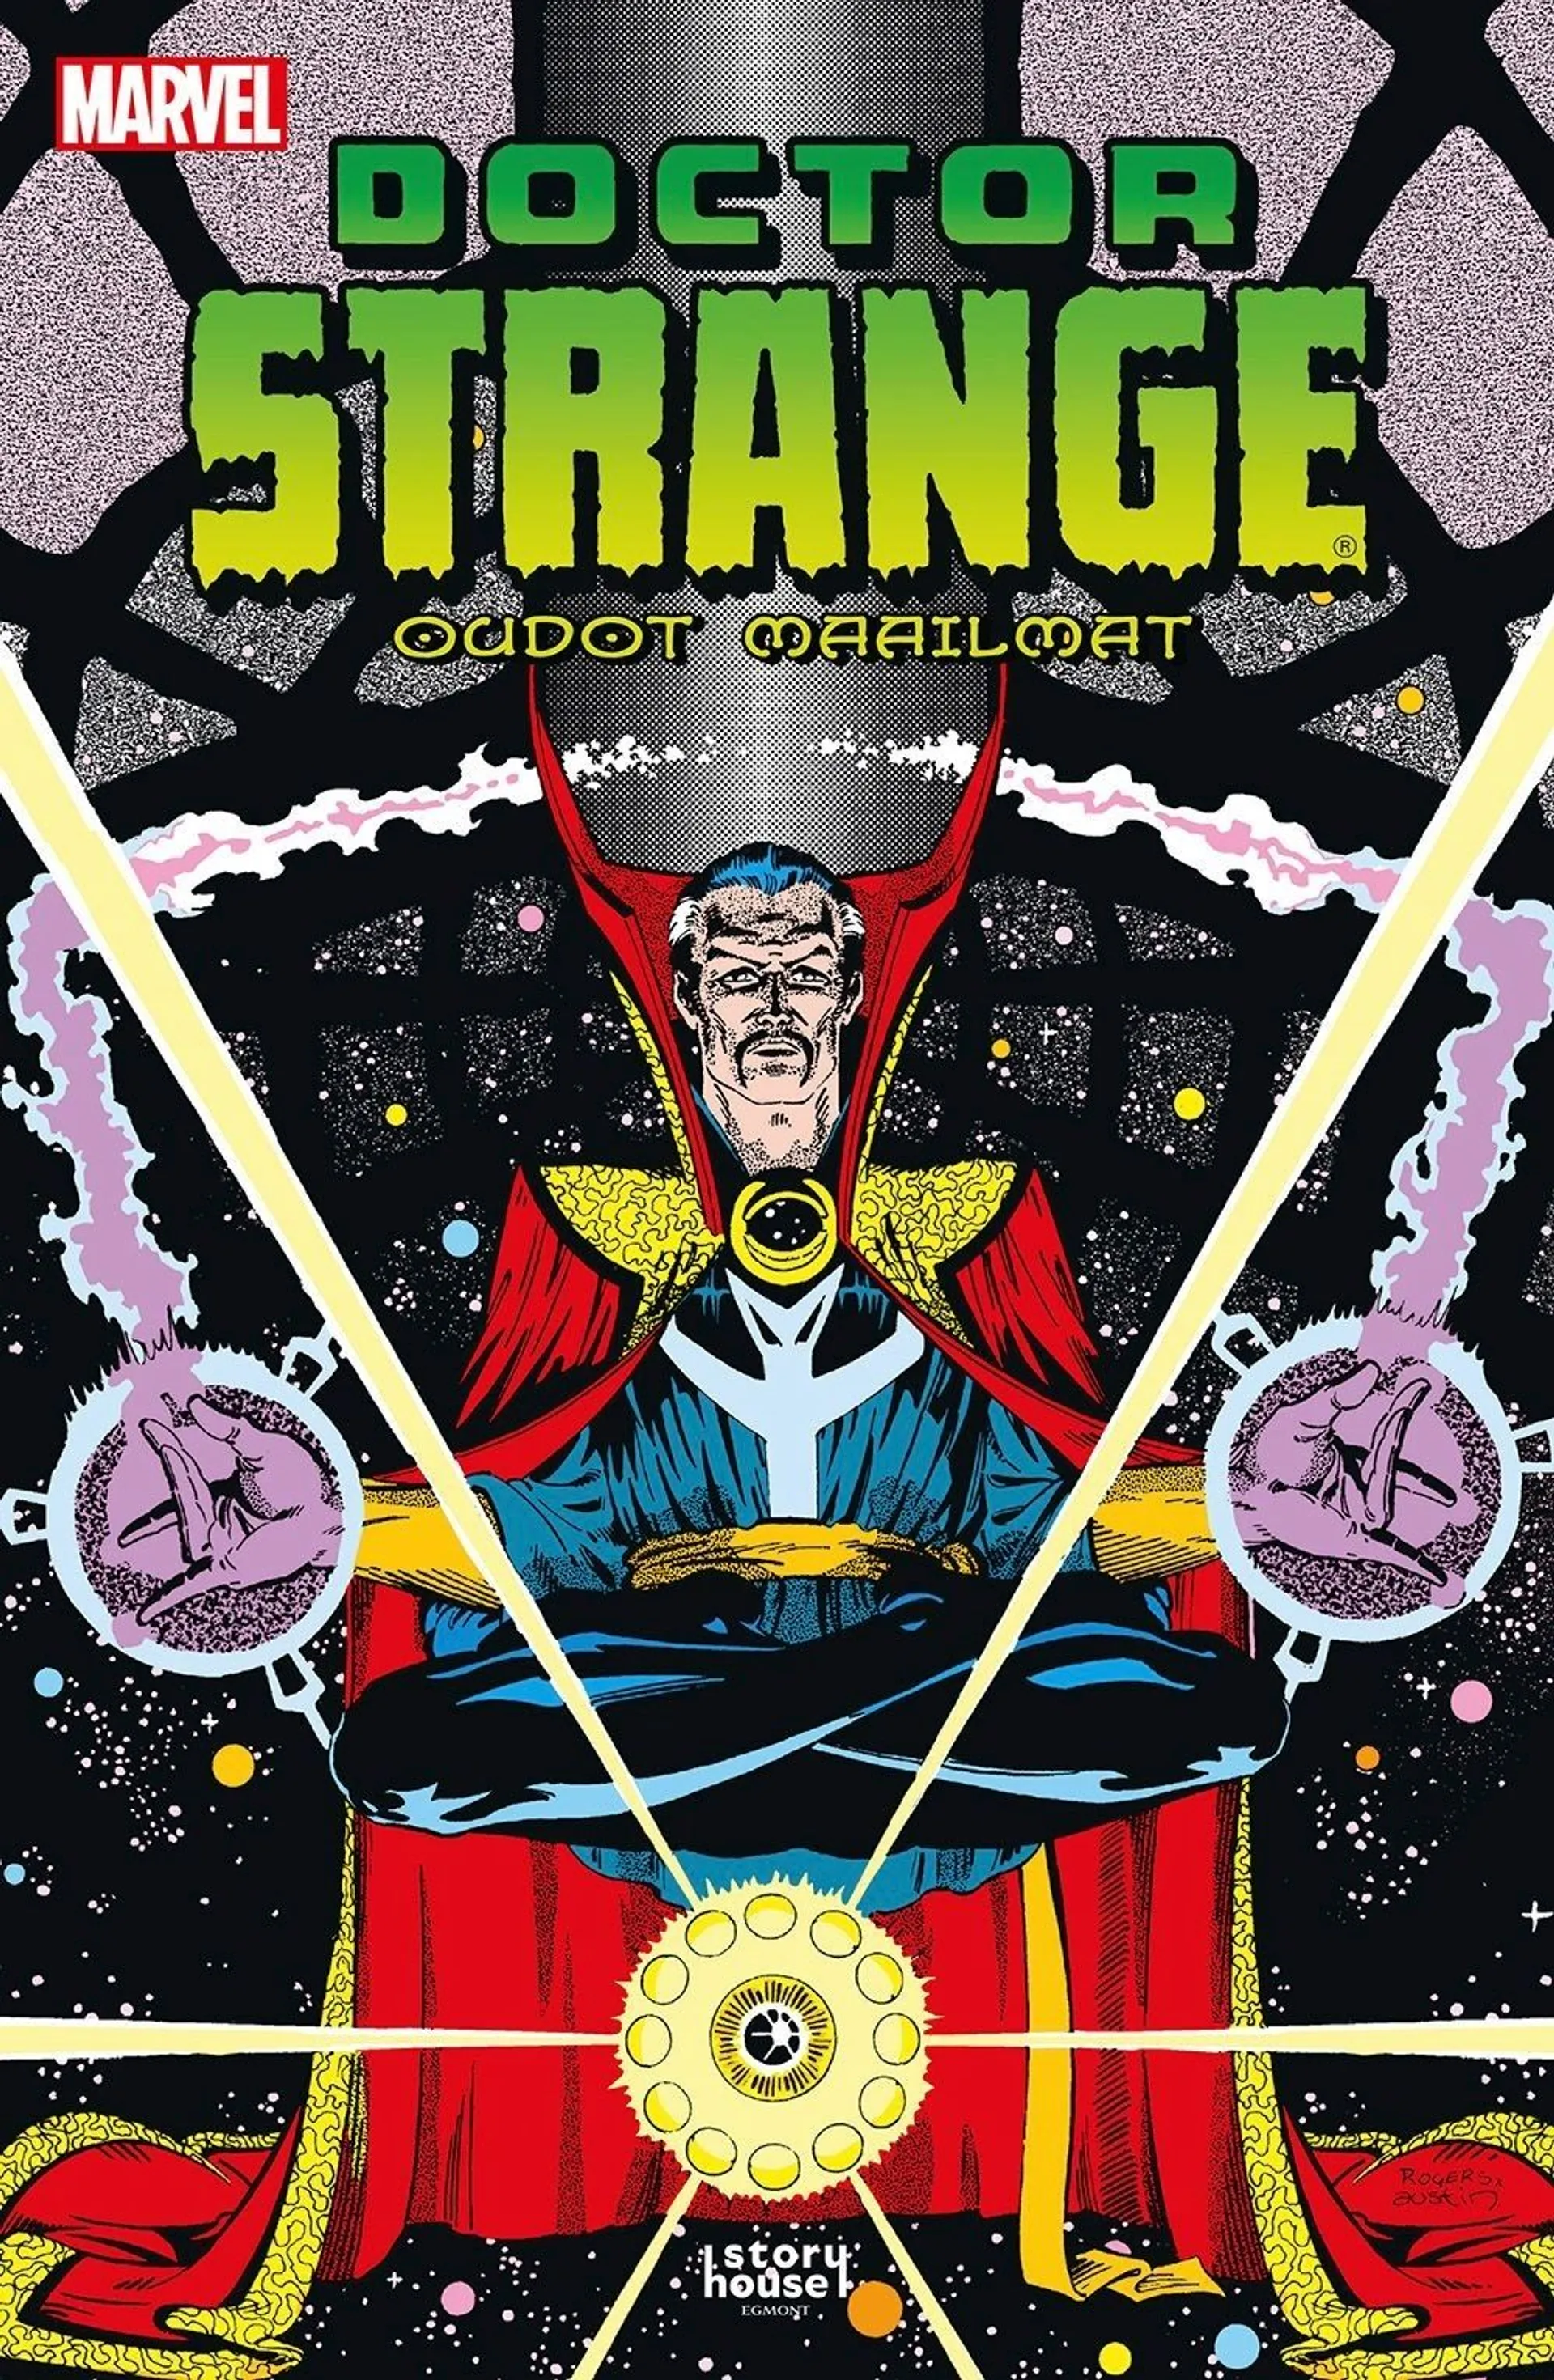 Stern, Doctor Strange: Oudot maailmat